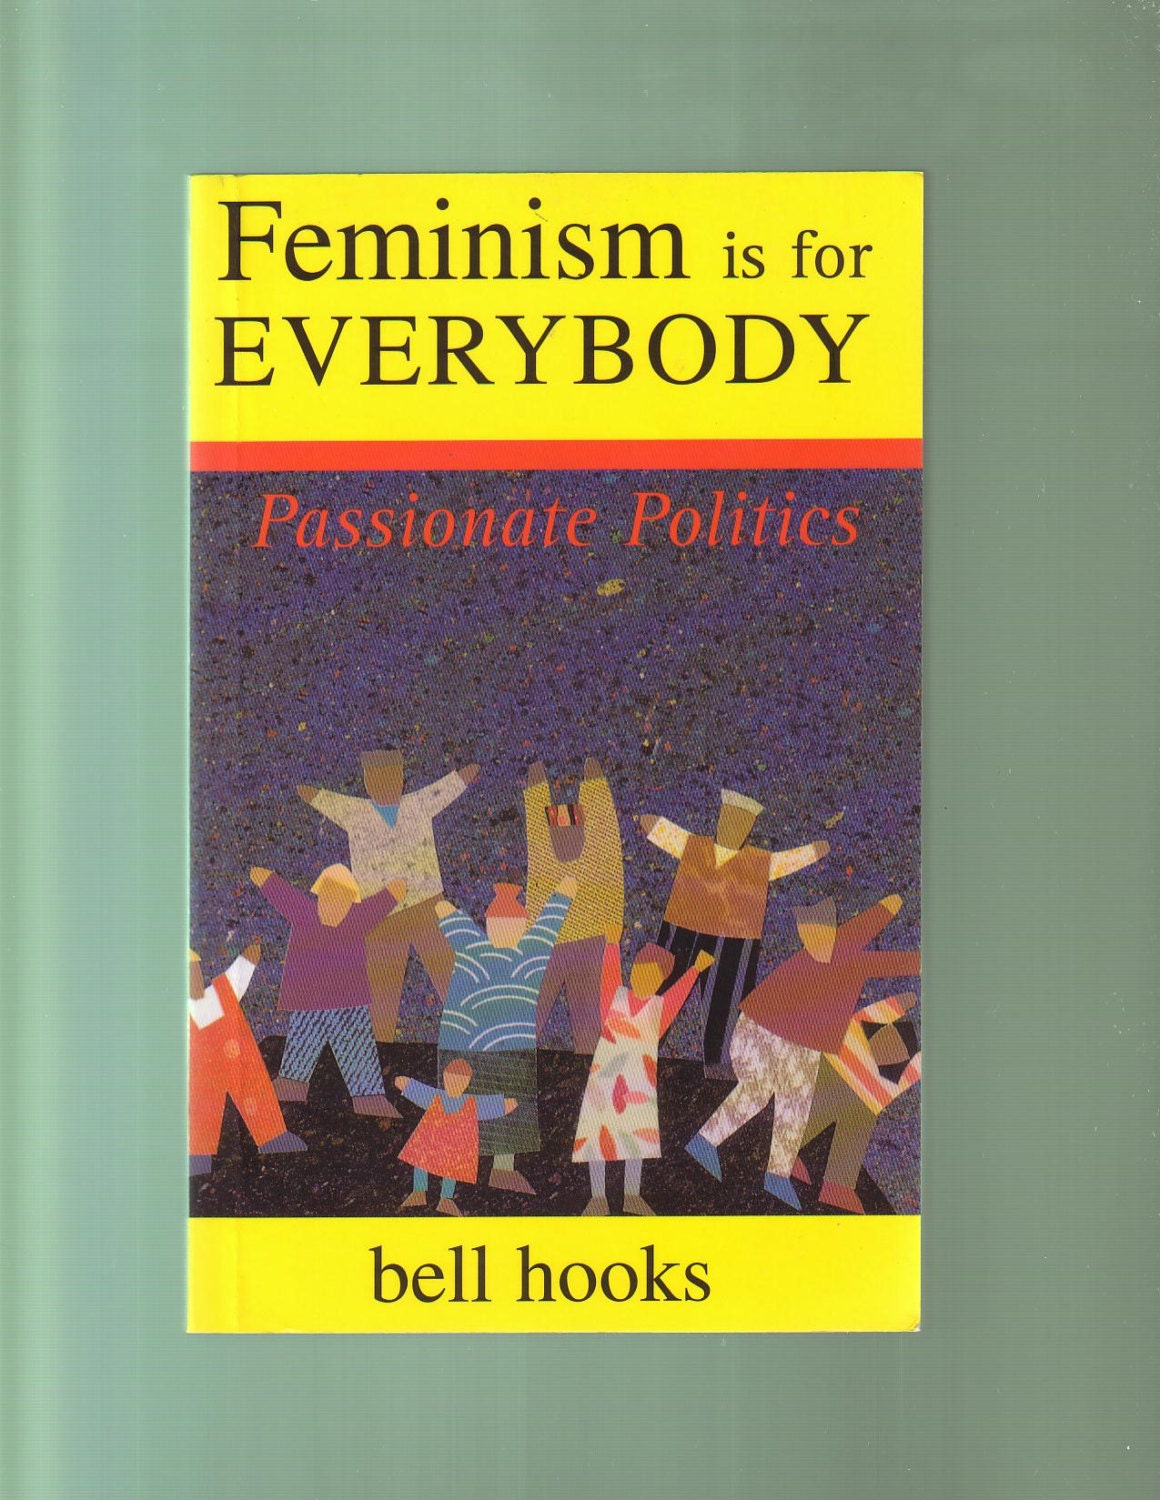 bell hooks books feminism is for everybody